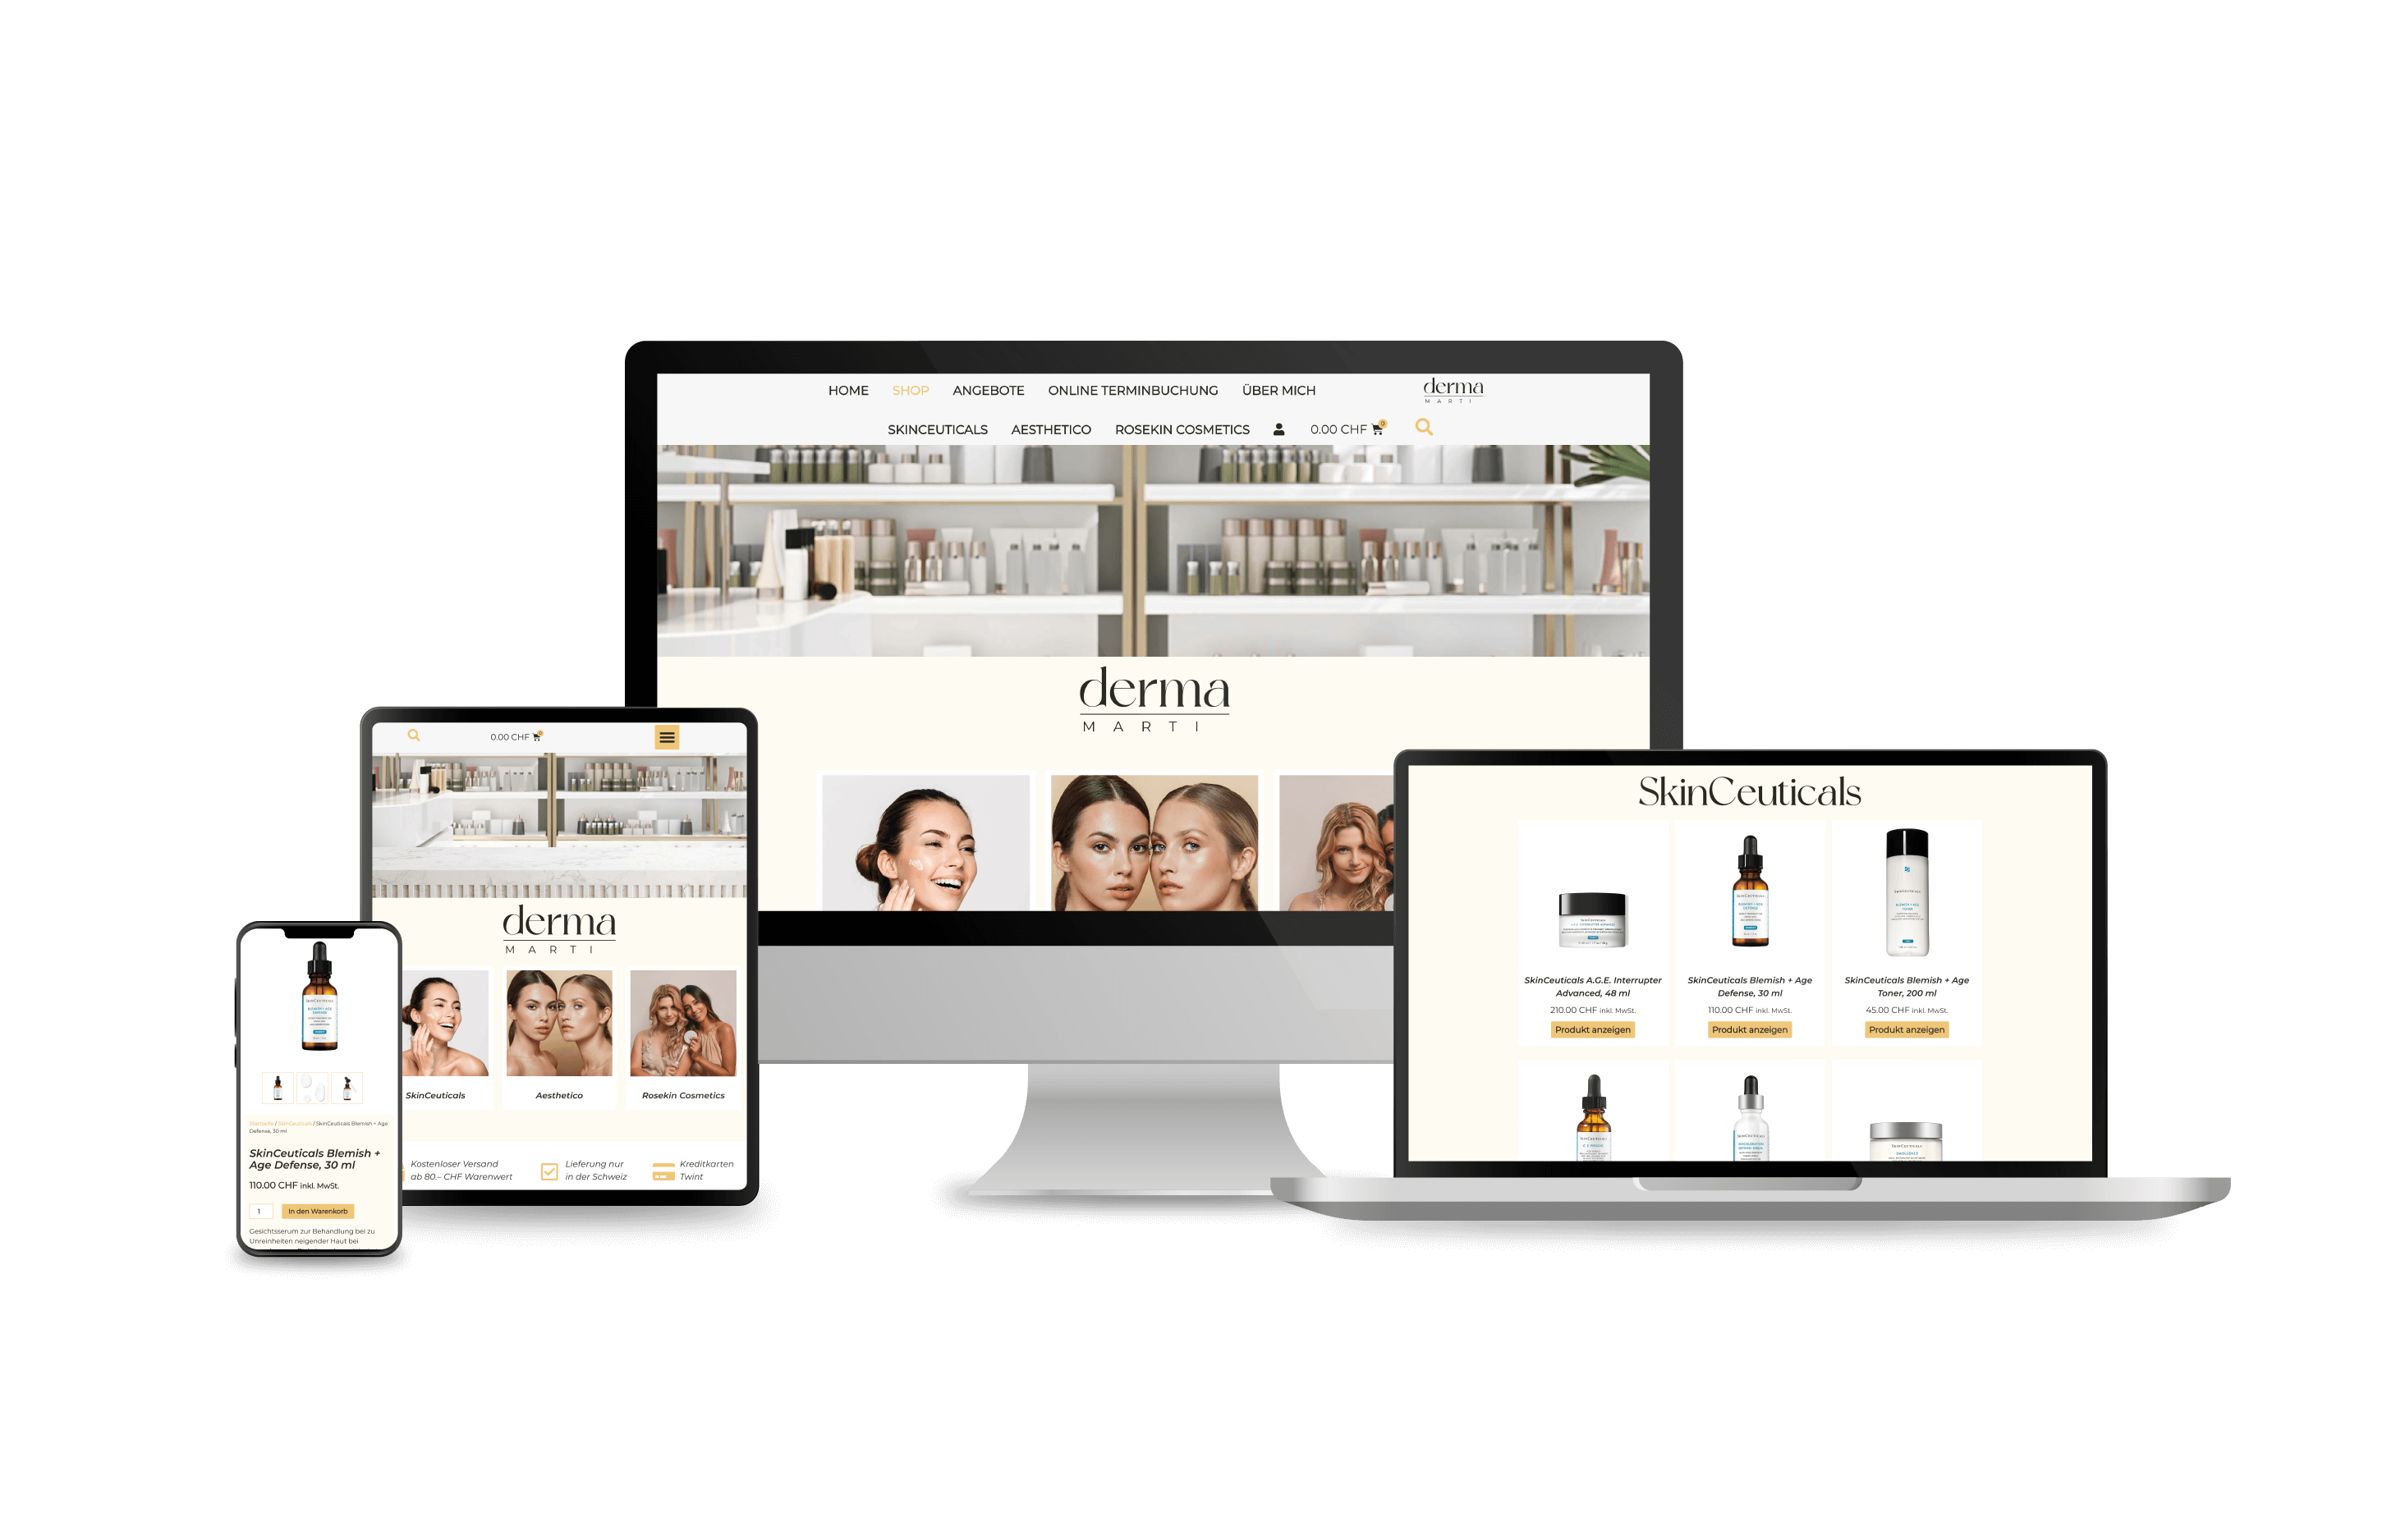 Projekt derma-marti Webshop mit einem Mockup der Website und einem Einkaufswagen-Icon